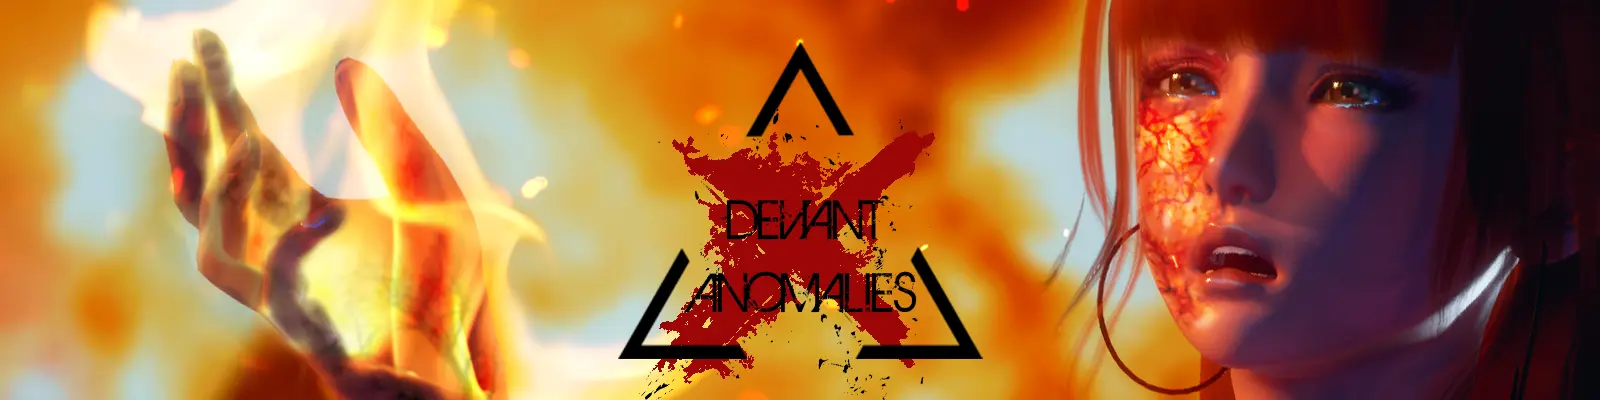 Deviant Anomalies [v0.1.1] main image